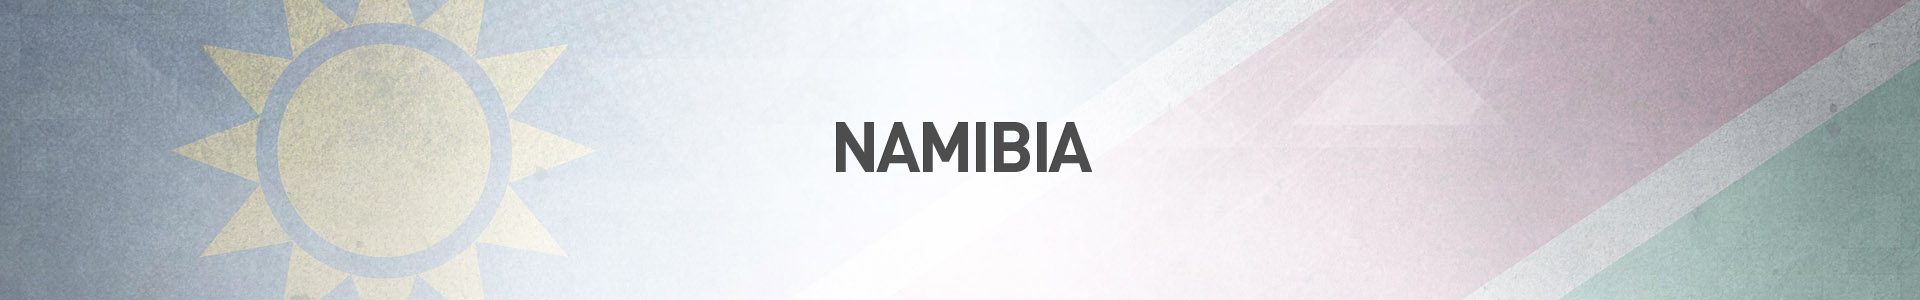 Topo-Pais-Namibia-SBA